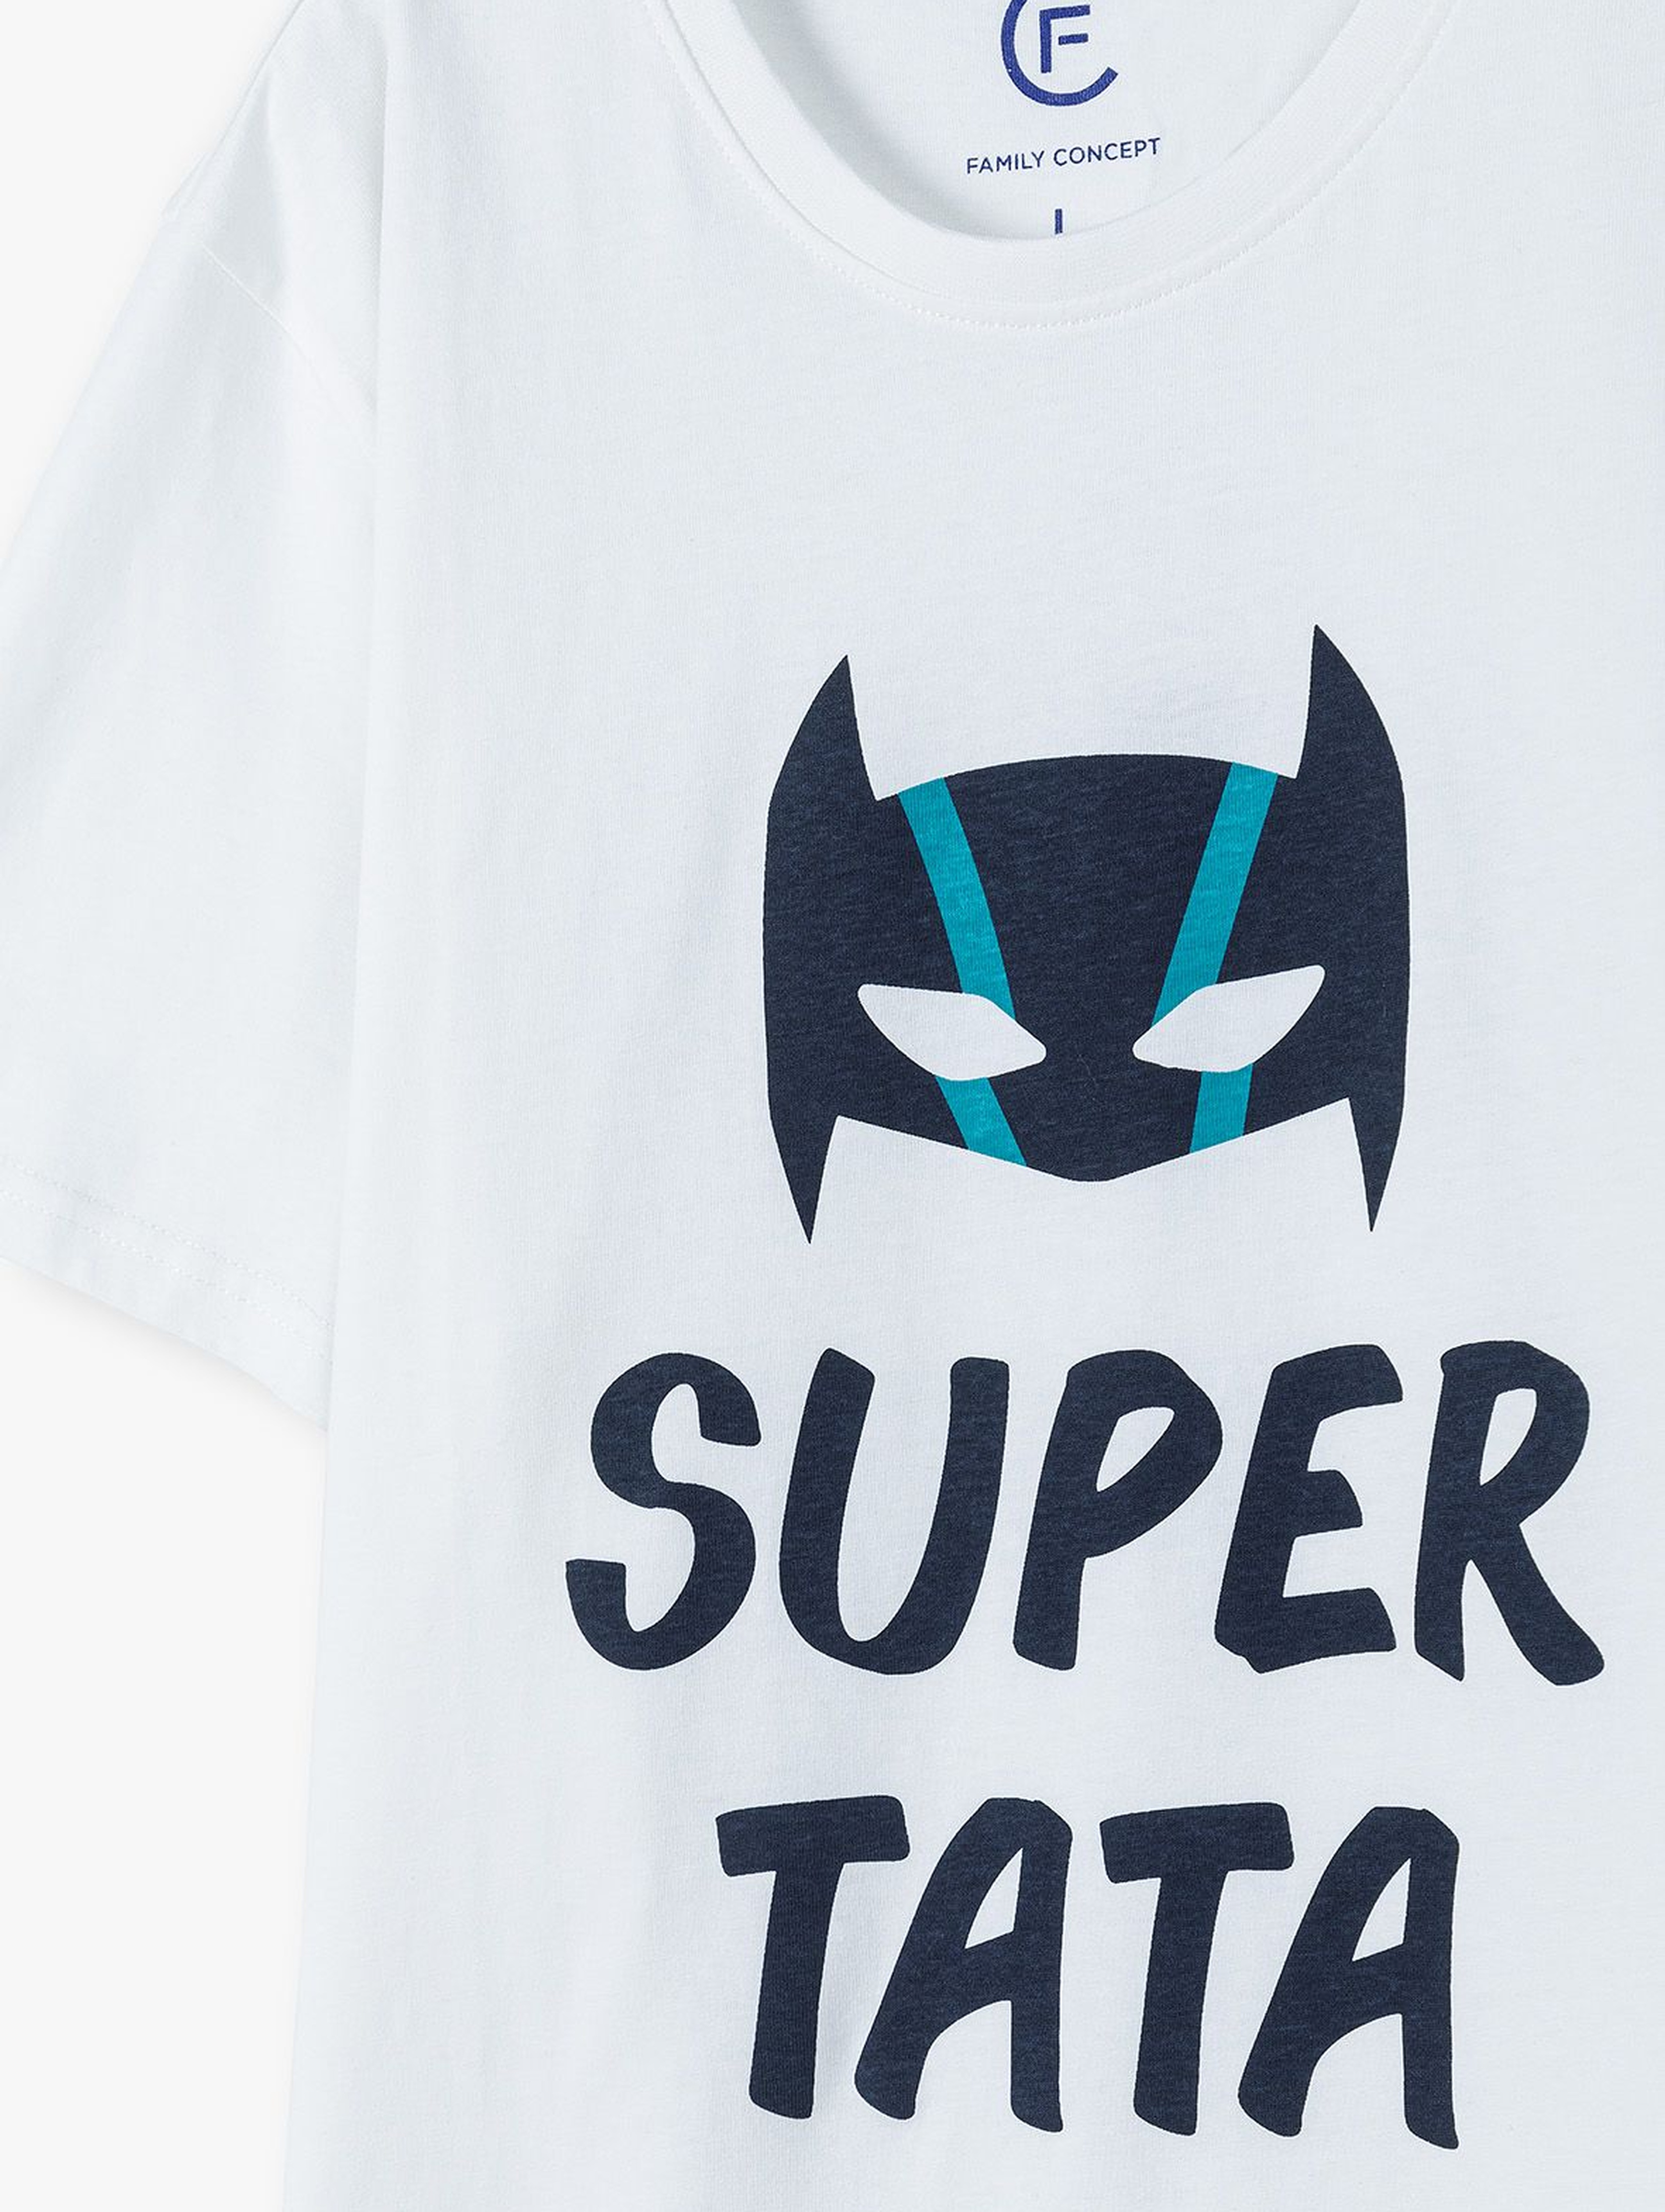 Bawełniany t-shirt  męski SUPER TATA